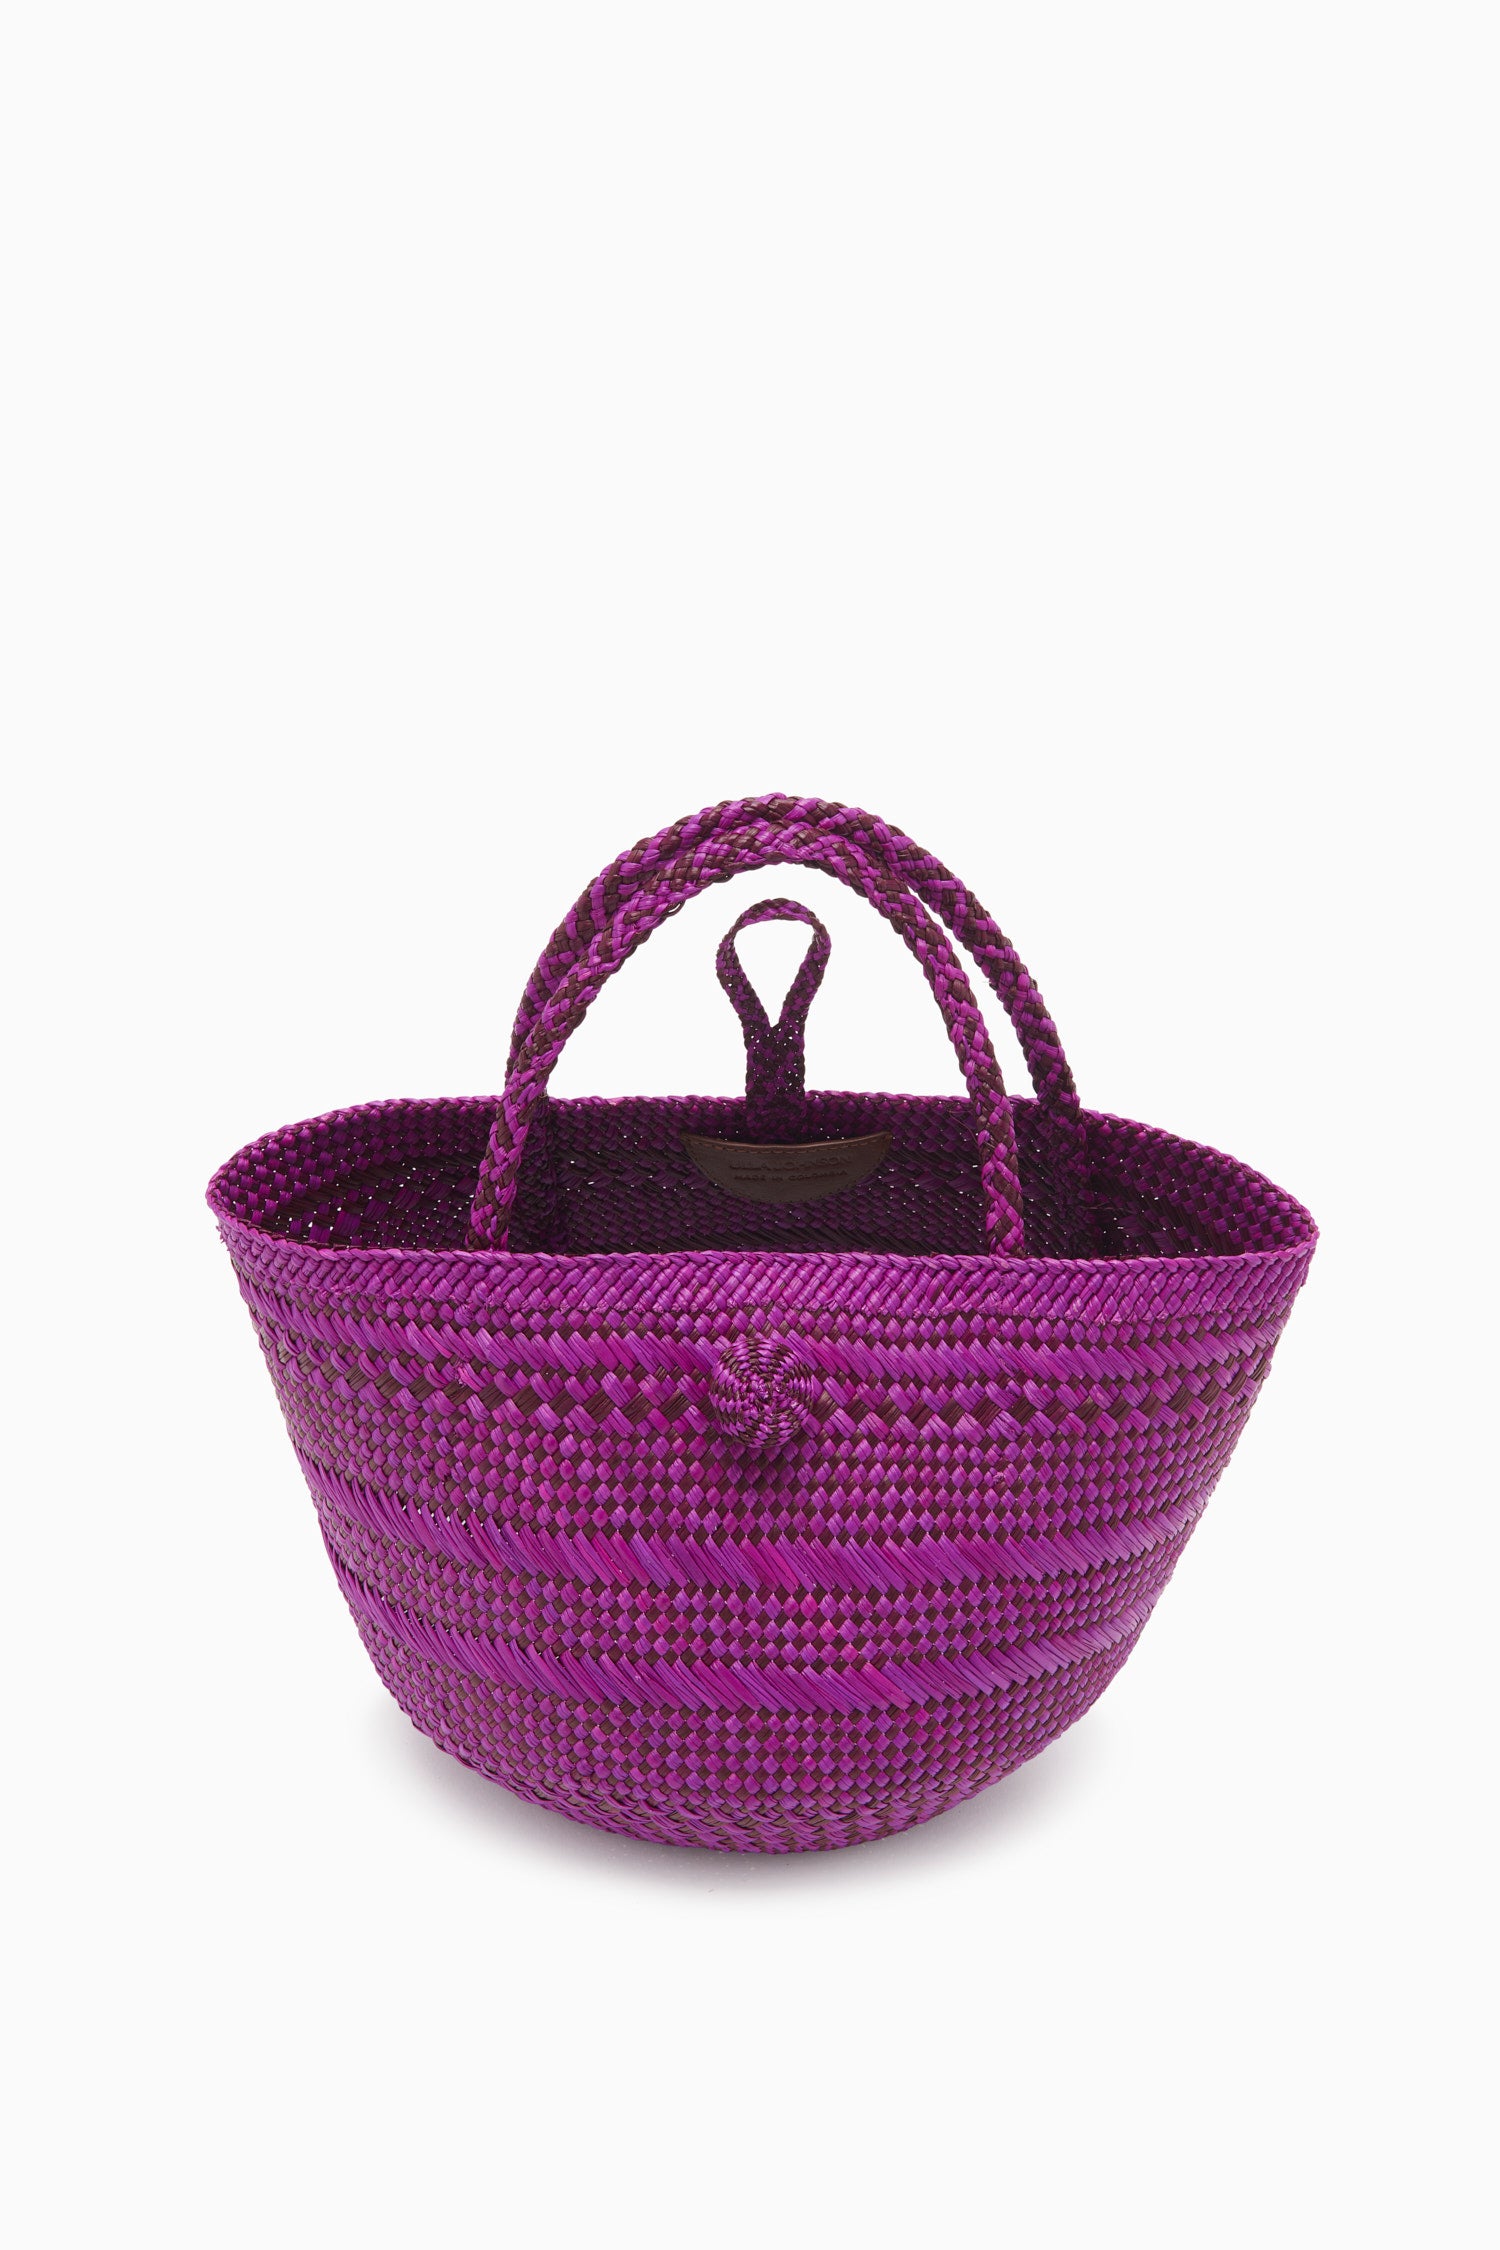 Ulla Johnson Marta Small Basket Tote - Orchid Stripe